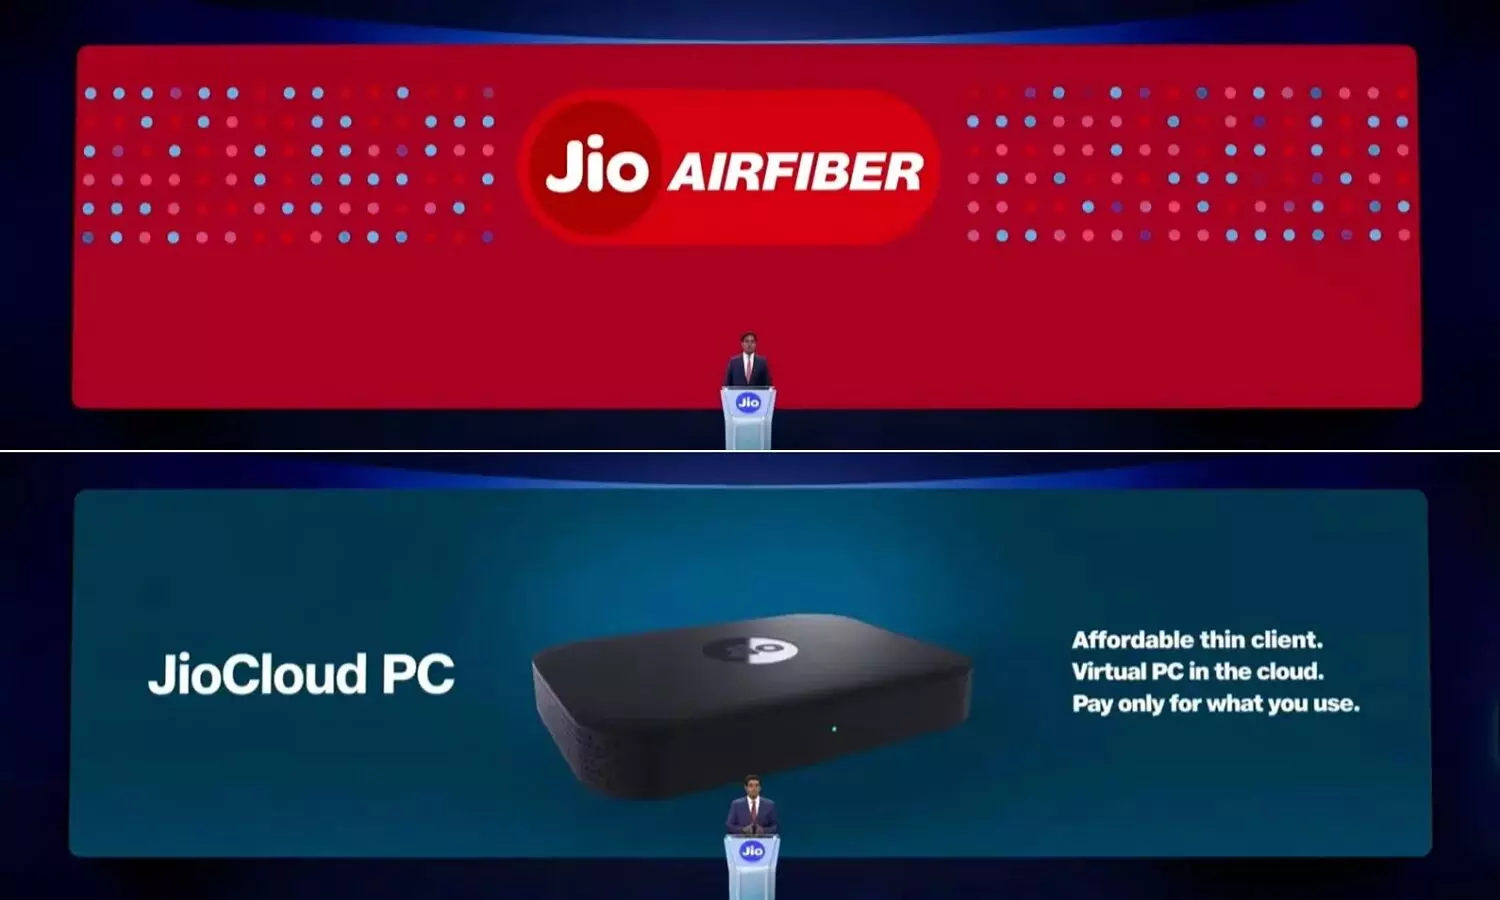 रिलांस जियो जल्द पेश करेगी Jio Virtual PC और Jio Air Fiber, ये है क्या?